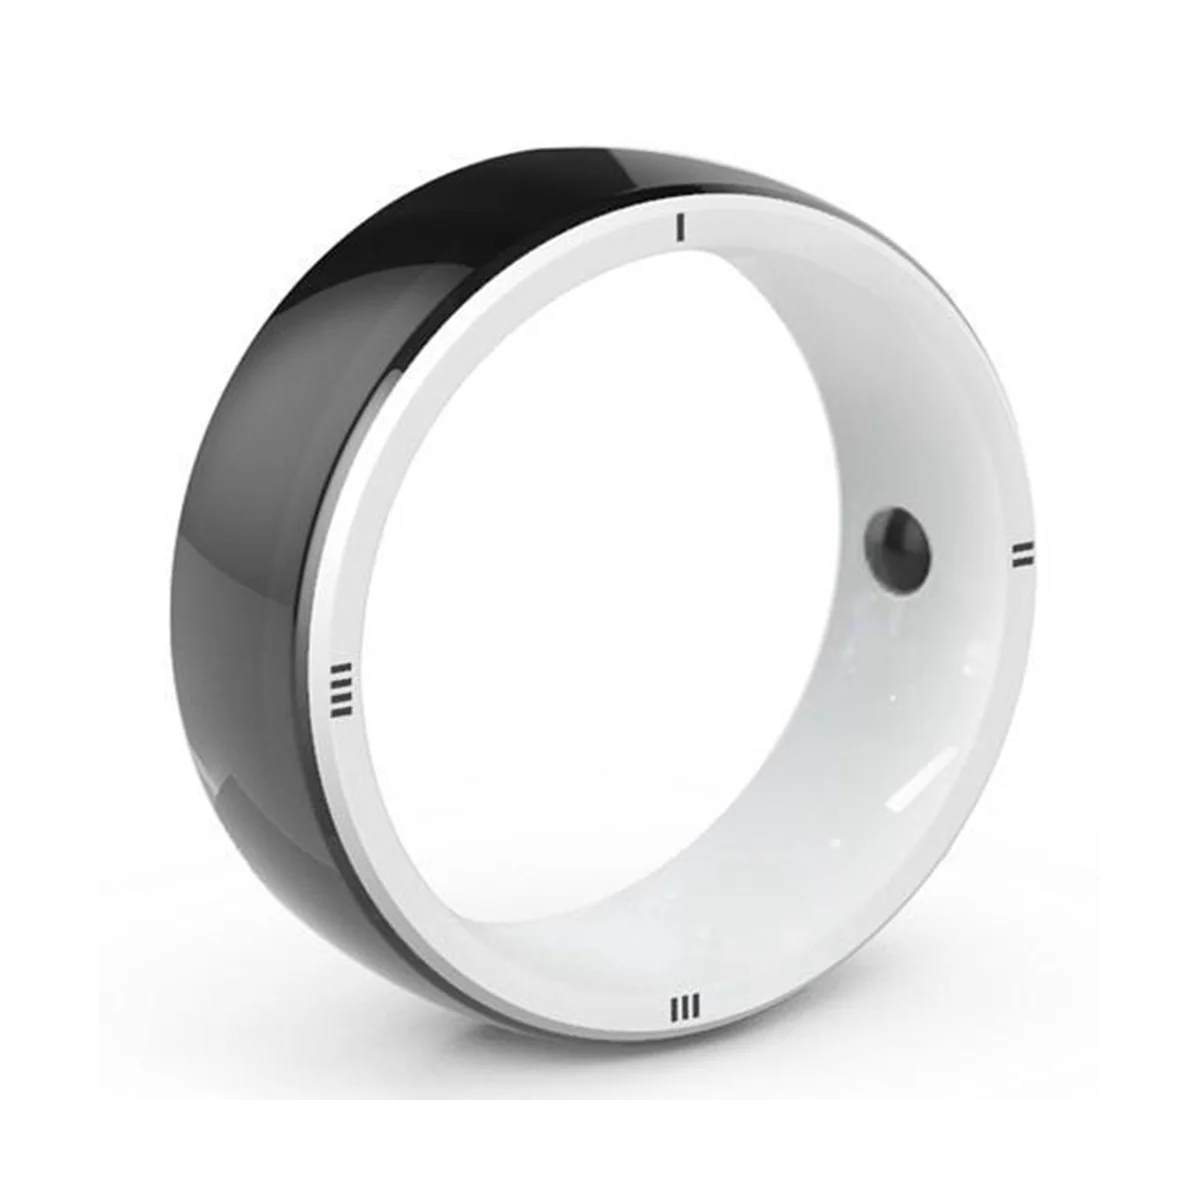 

JAKCOM R5 новый продукт бытовой электроники умные носимые часы с встроенными RFID-картами и здоровьем L